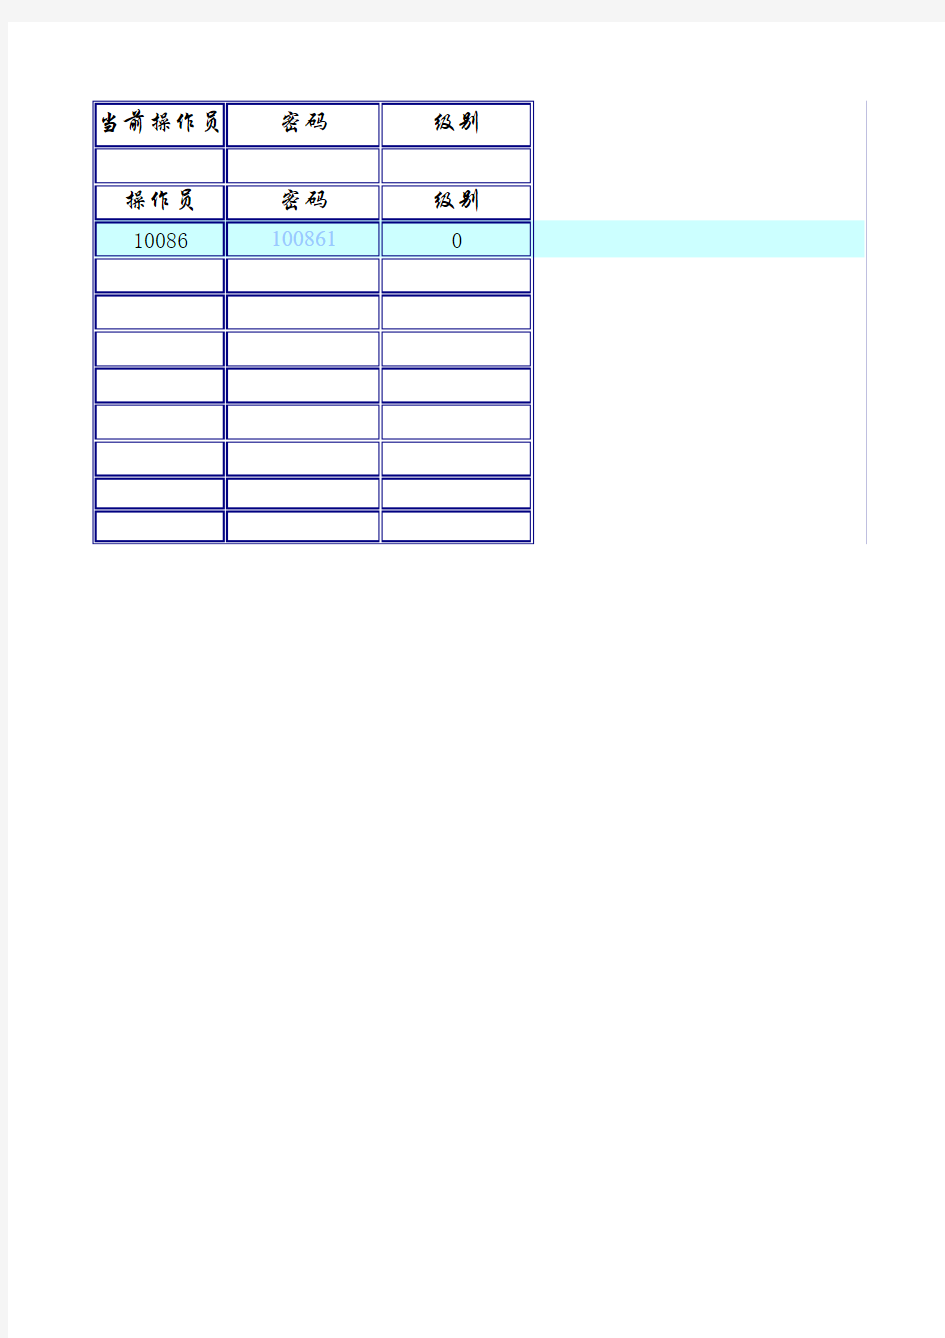 仓库管理系统表格Excel模板